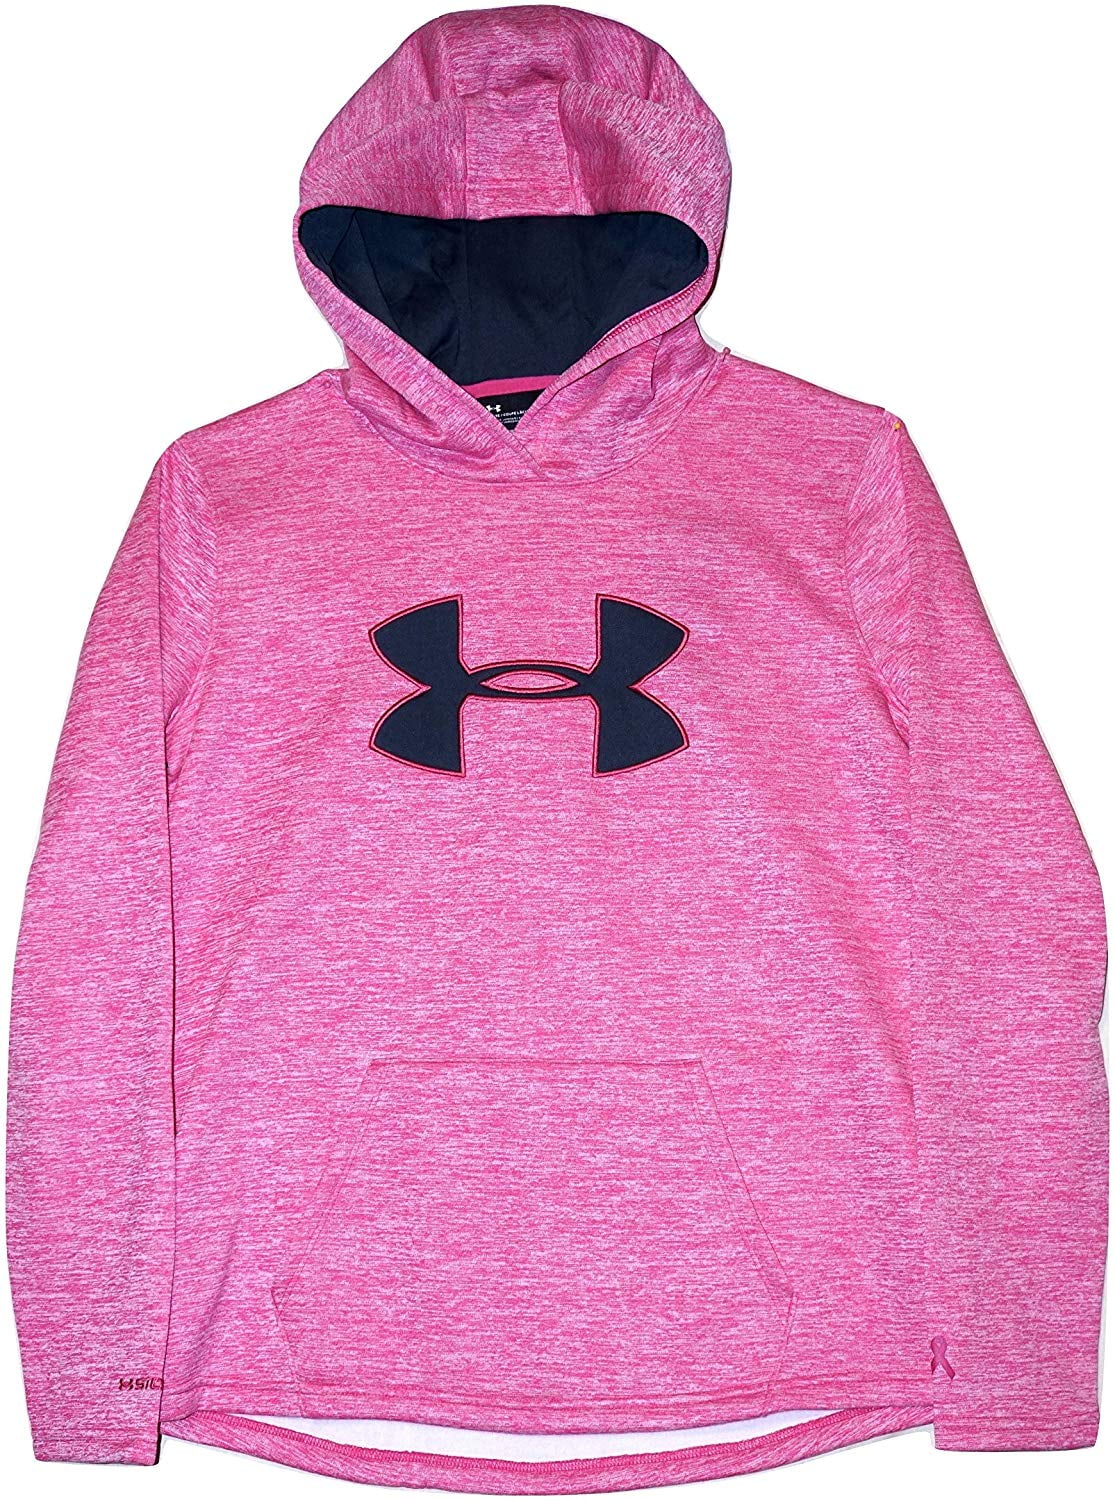 pink under armor hoodie